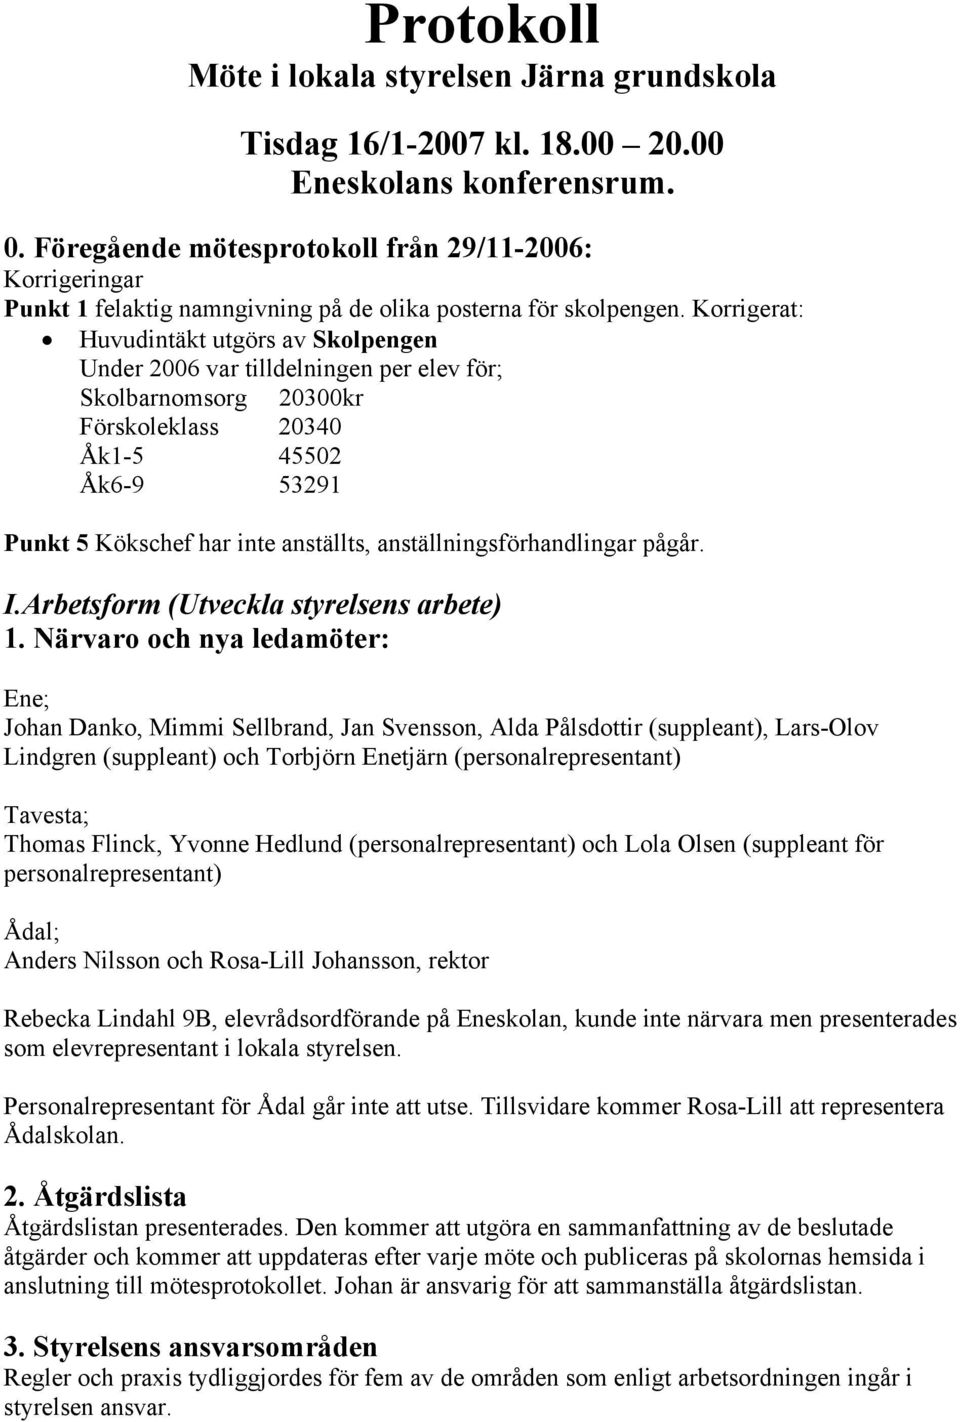 Protokoll Möte i lokala styrelsen Järna grundskola - PDF Gratis ...